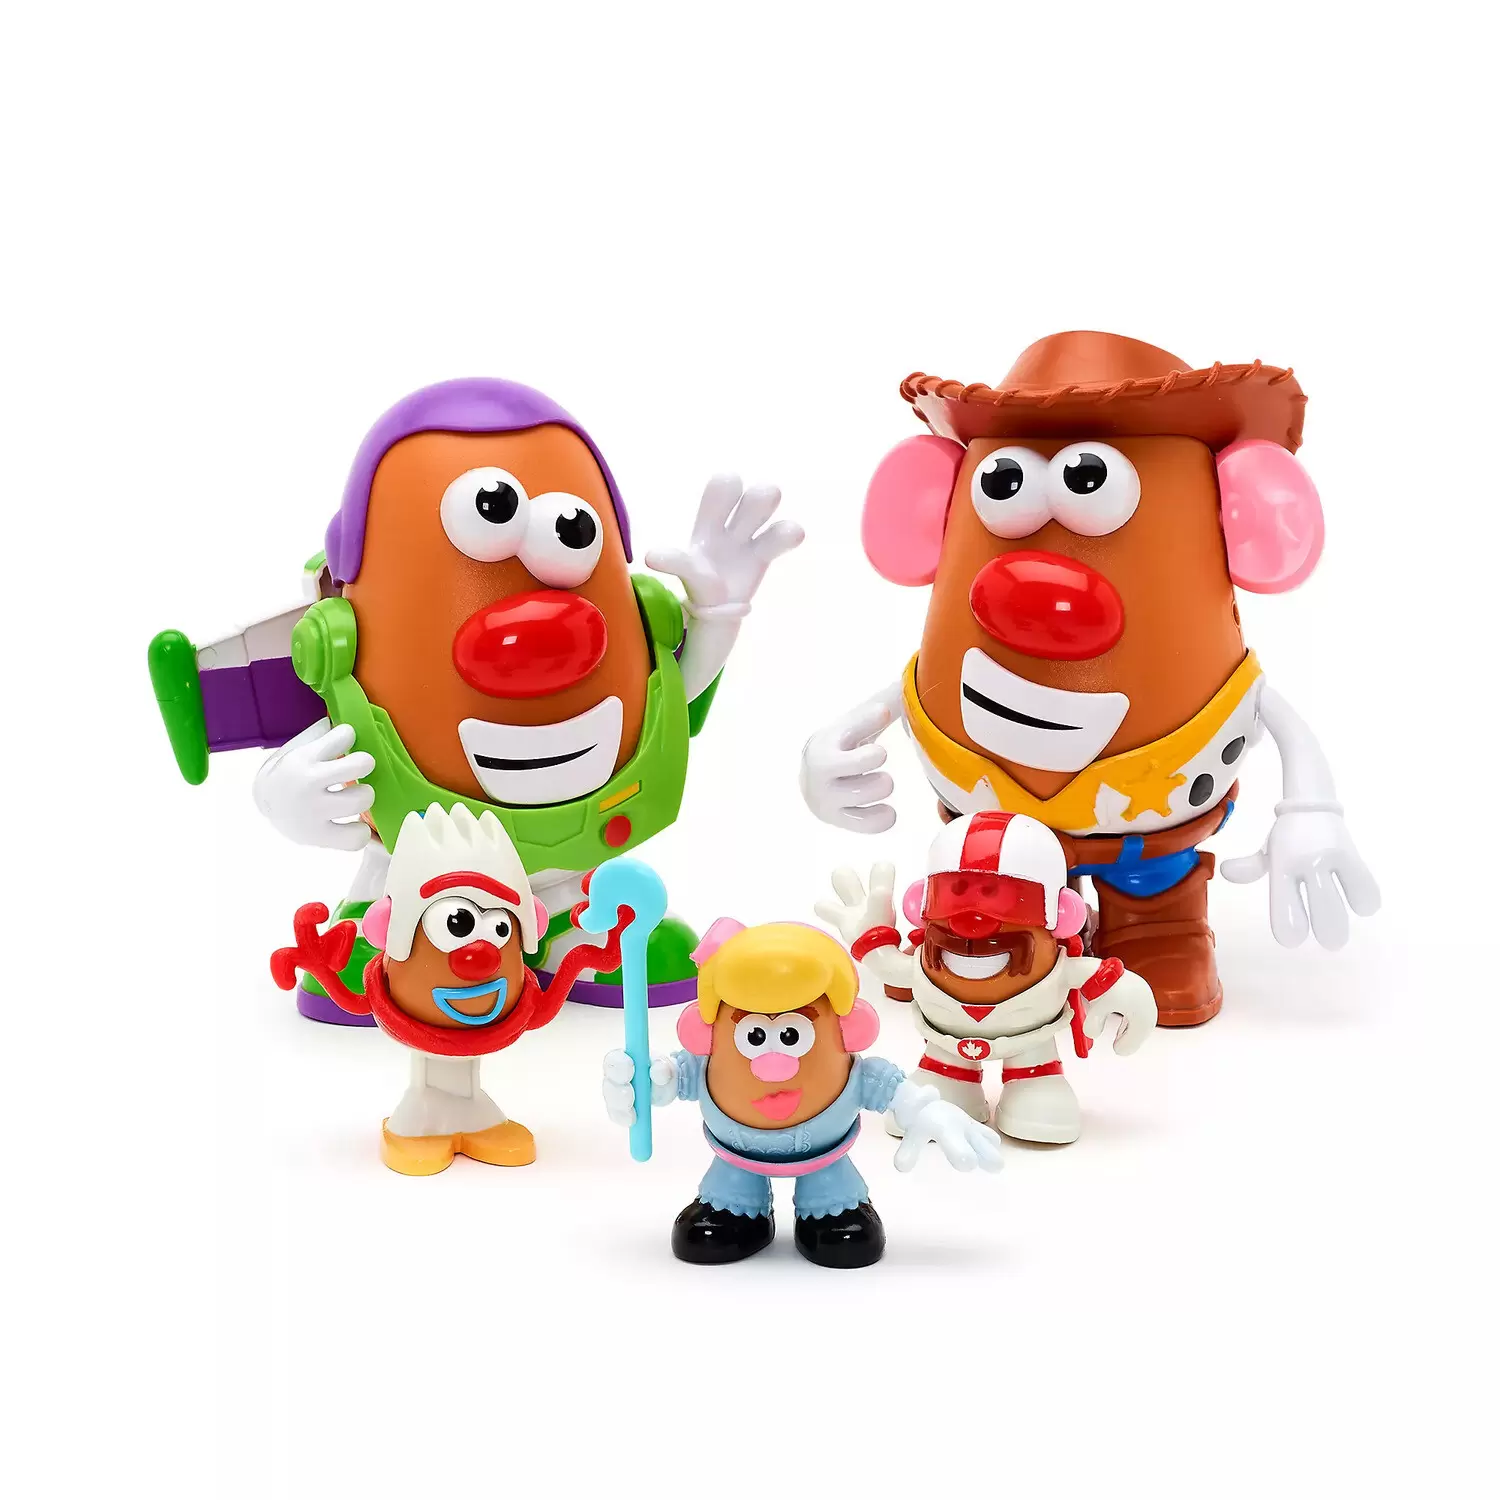 Mr. Potato Head - Potato Pals - Toy Story 4